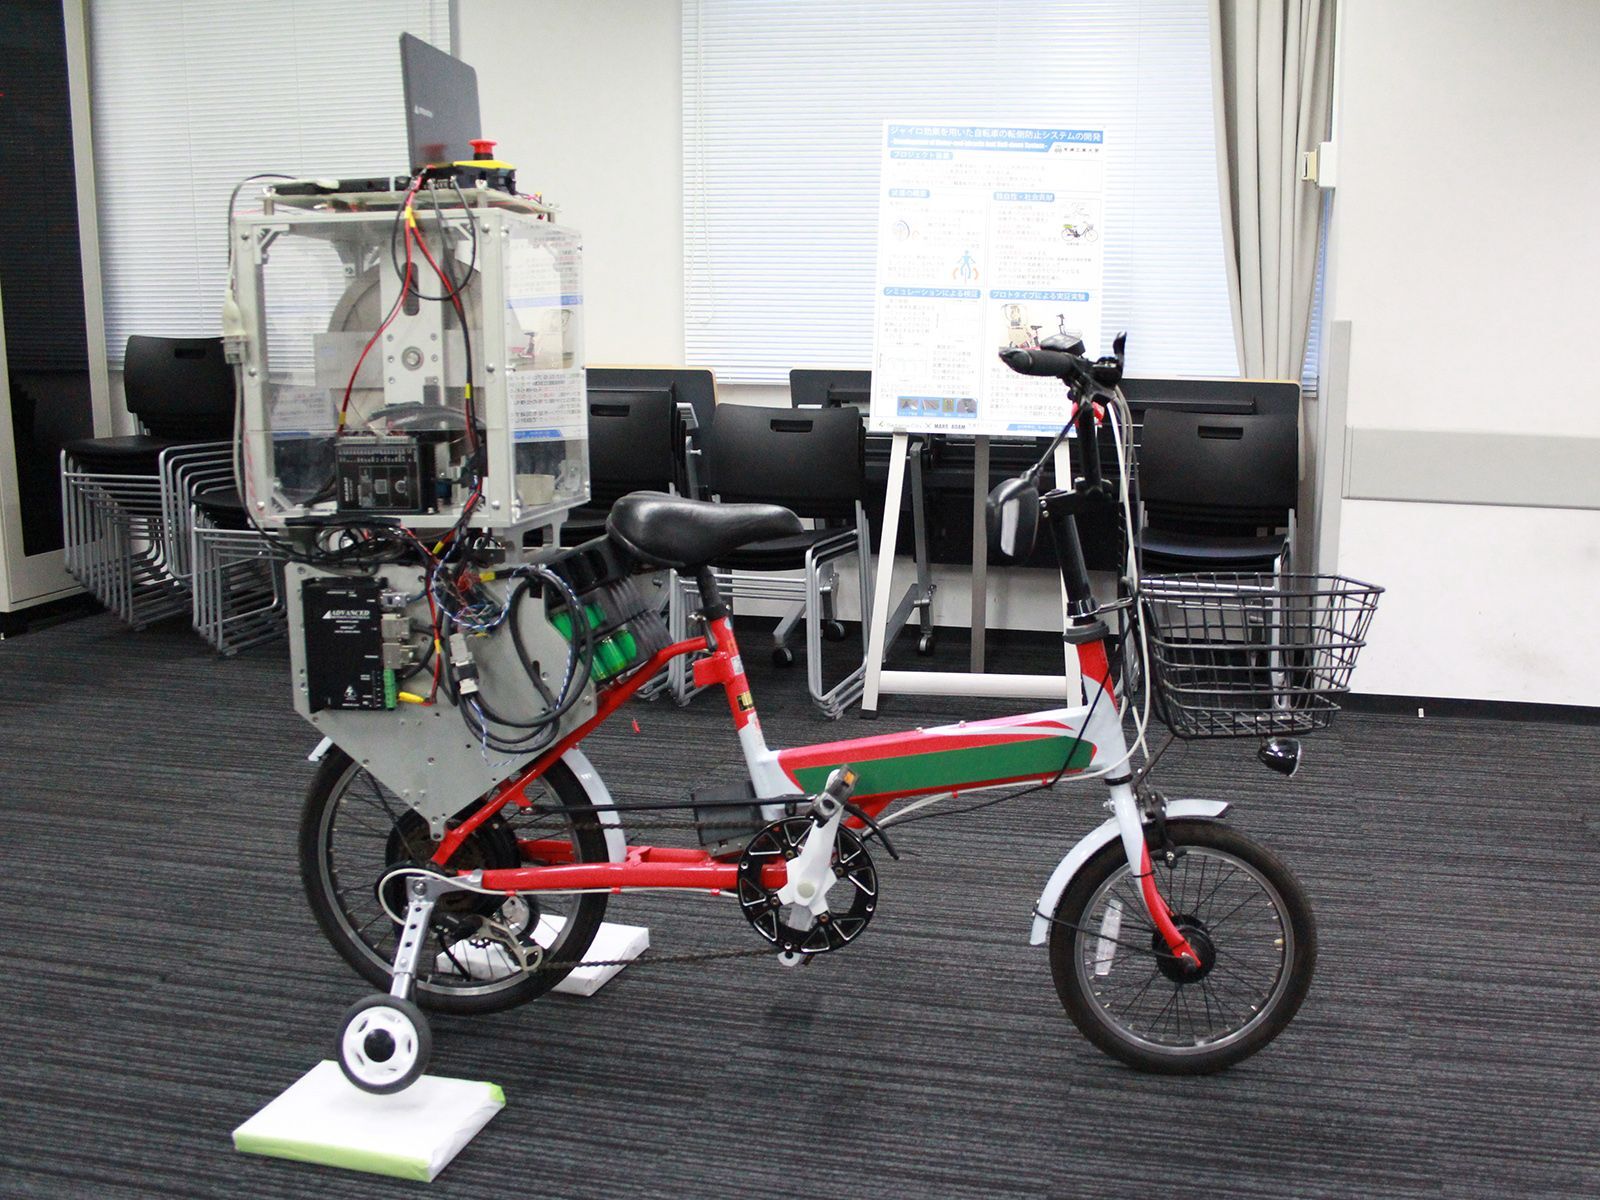 ジャイロ制御による低速時の自転車転倒防止システムを開発 さいたま市との連携で実現に向けデモ機を展示 芝浦工業大学のプレスリリース